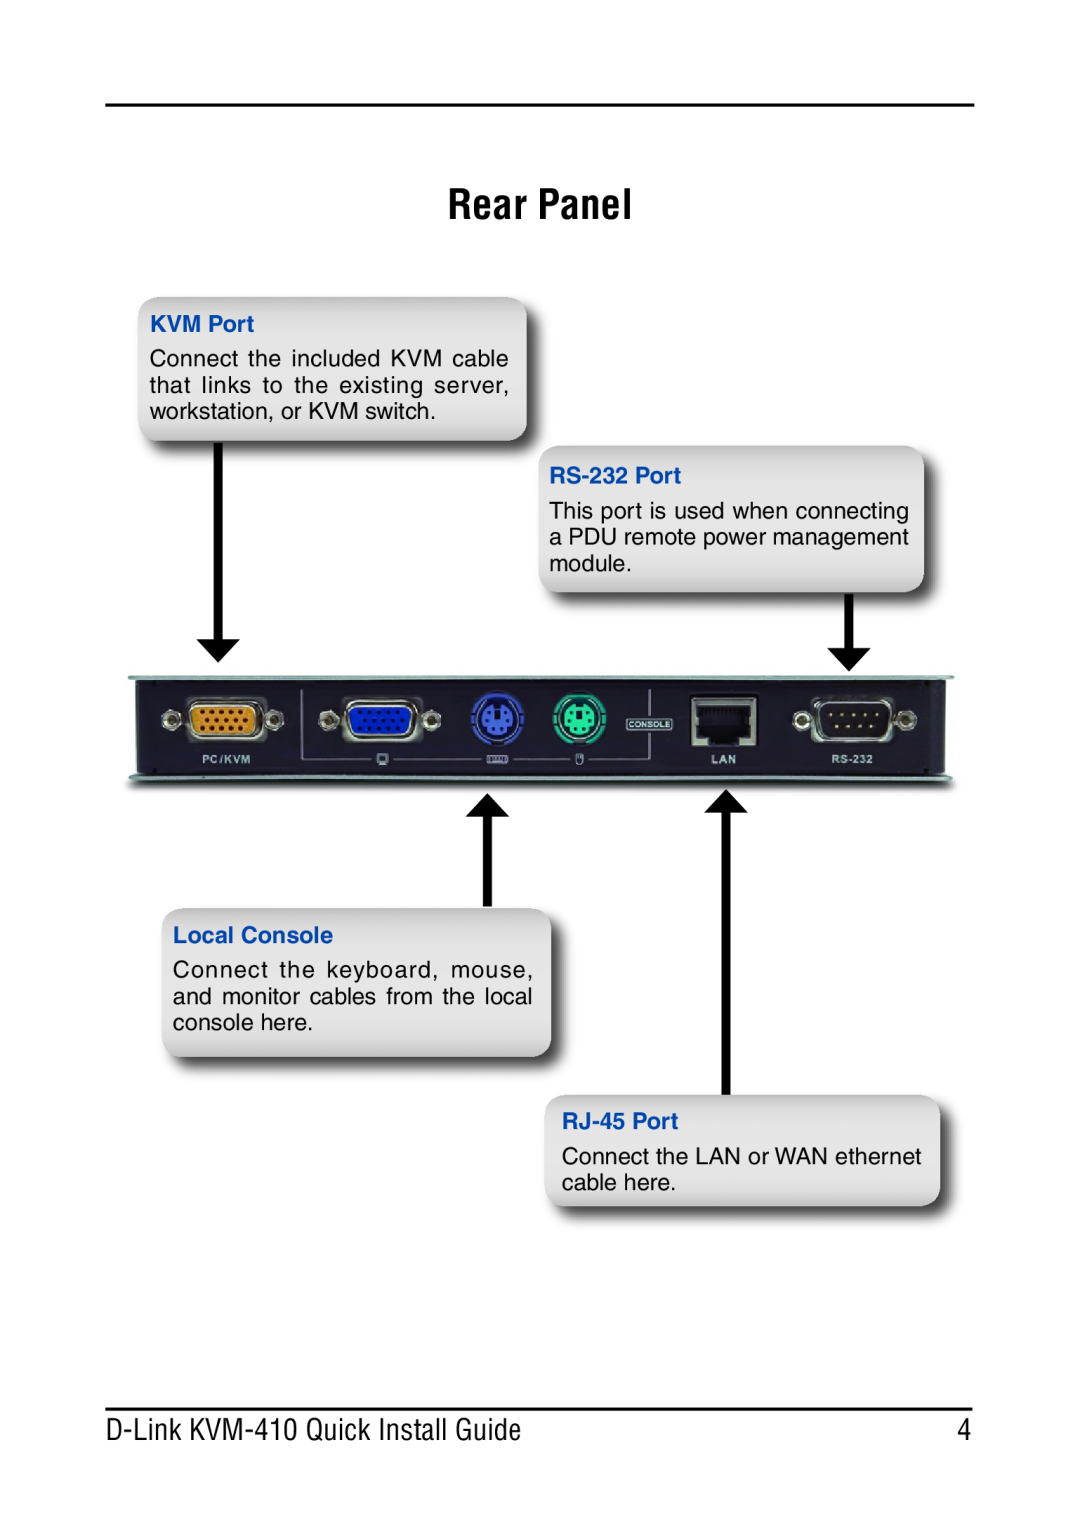 D-Link KVM-410 manual Rear Panel, KVM Port, Local Console, RS-232 Port, RJ-45 Port 